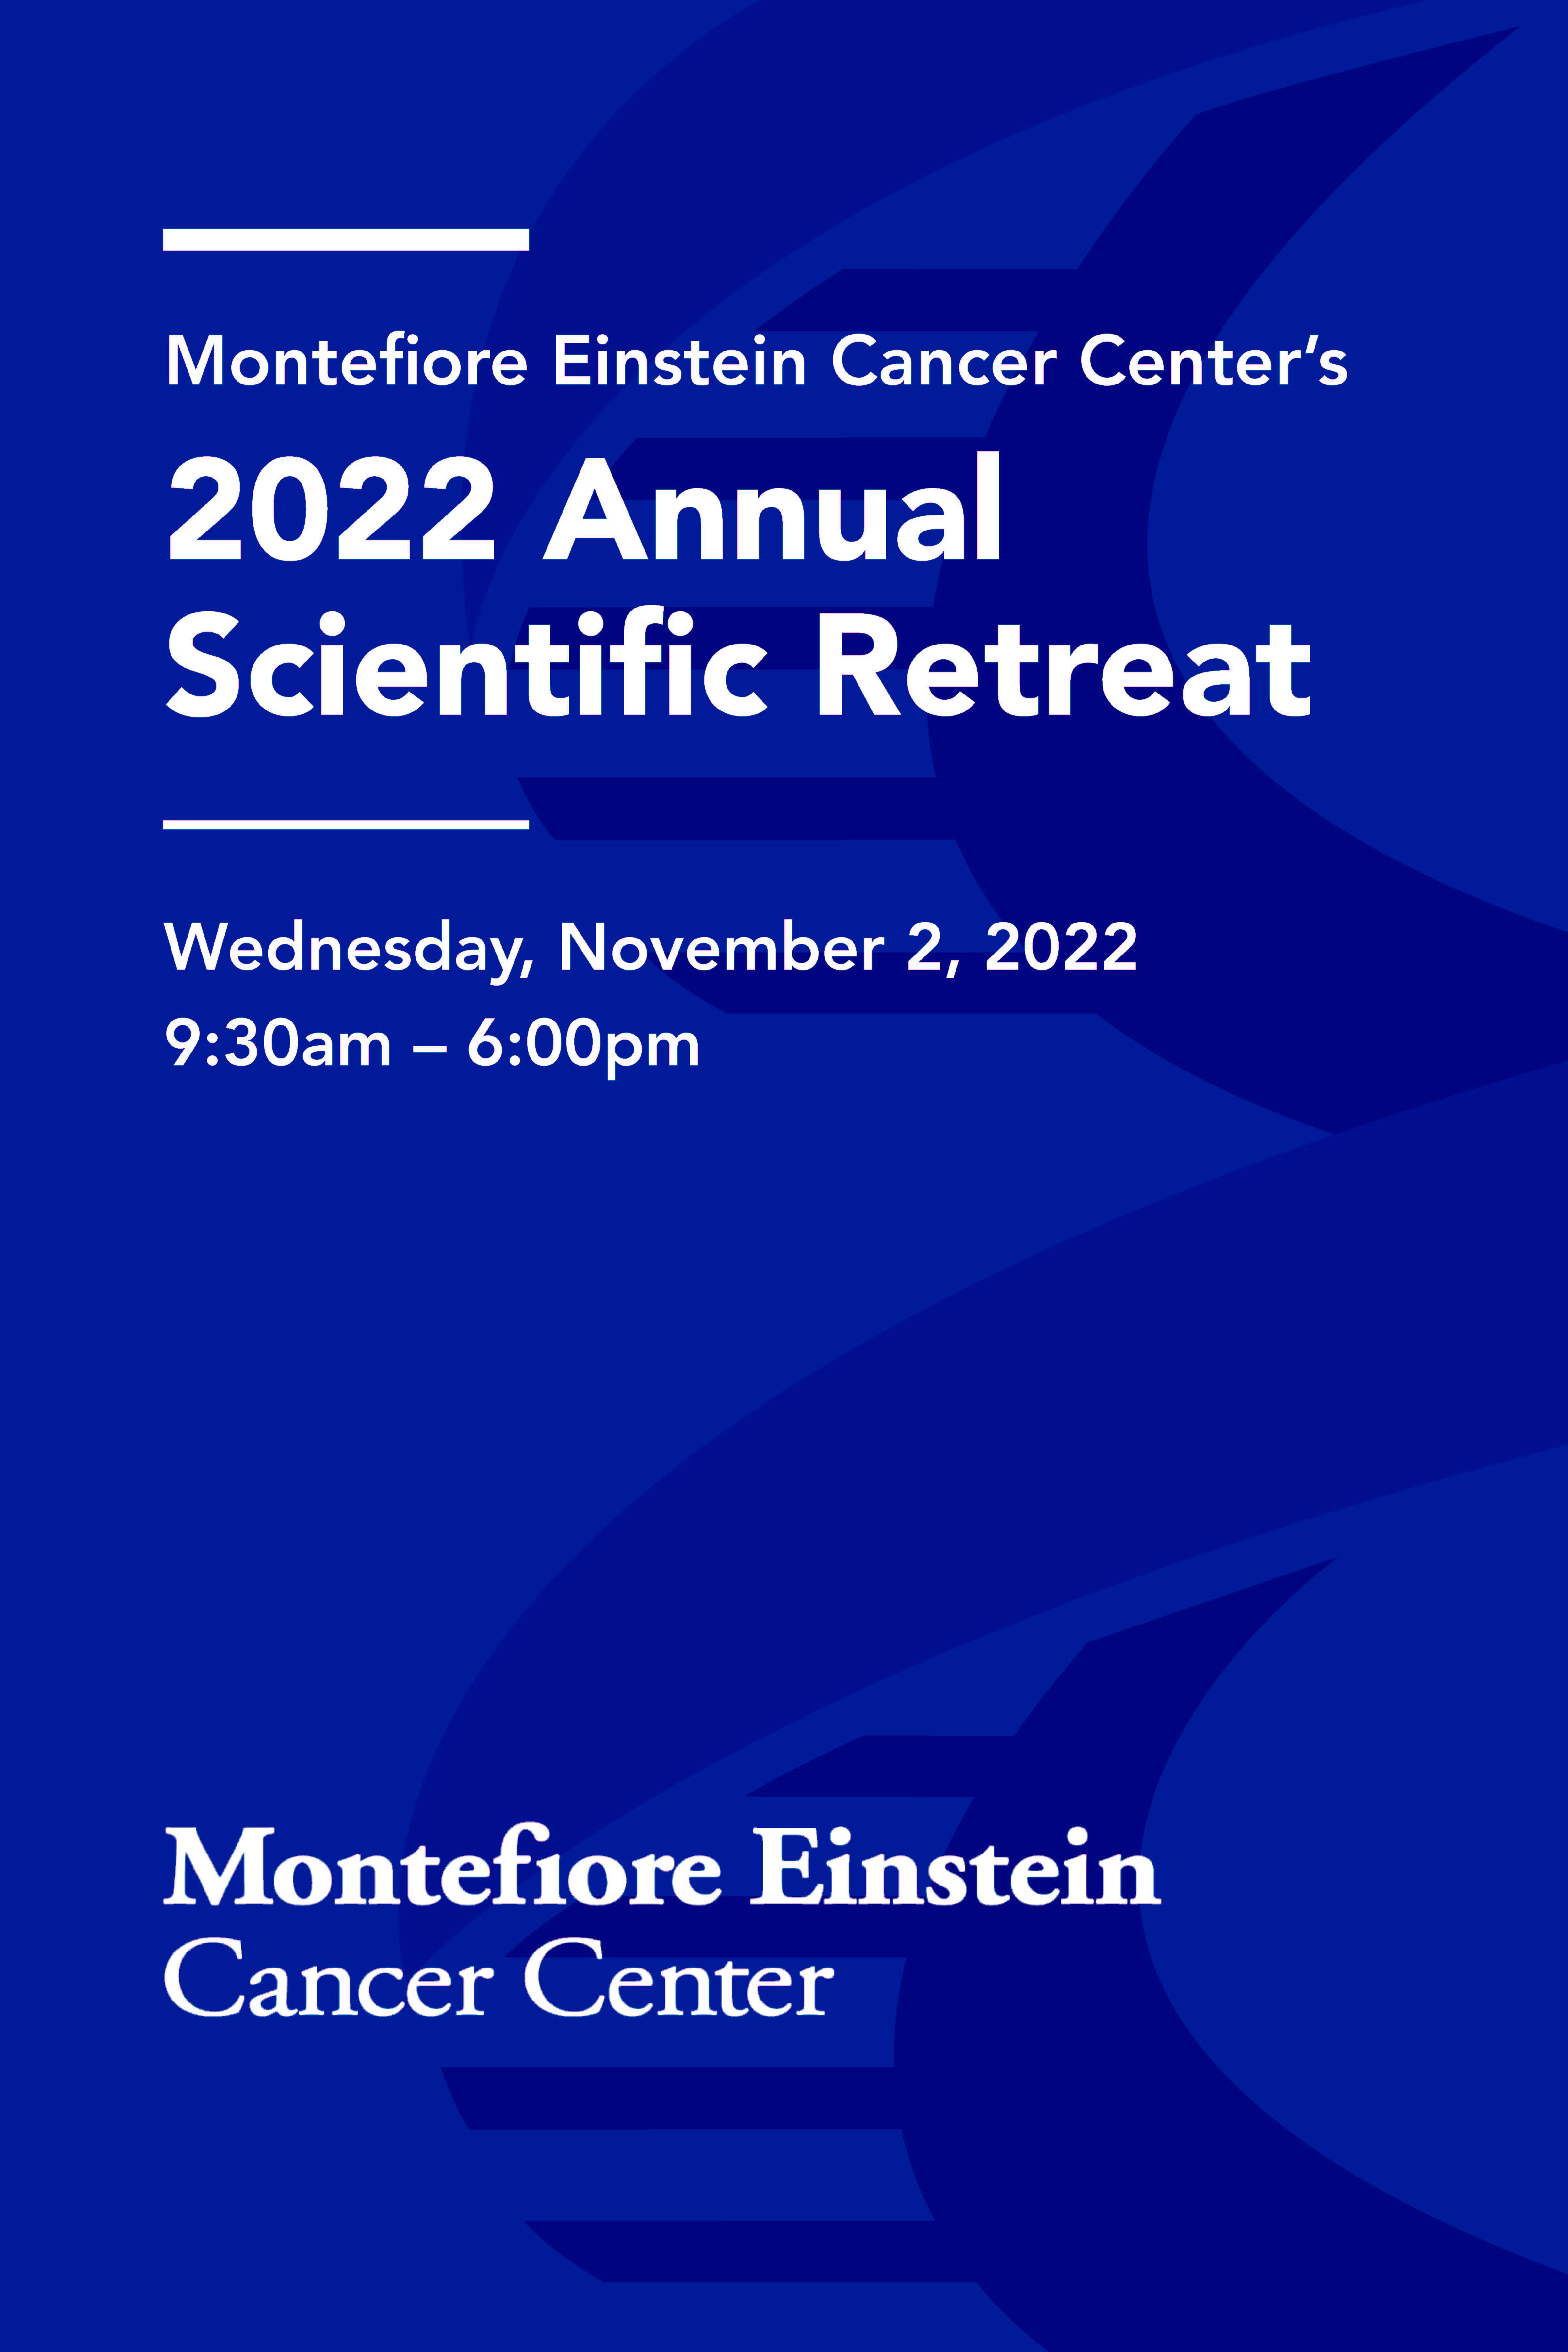 Montefiore Einstein Cancer Center 2022 Annual Scientific Retreat – Wednesday, November 2, 2022 9:30a.m.